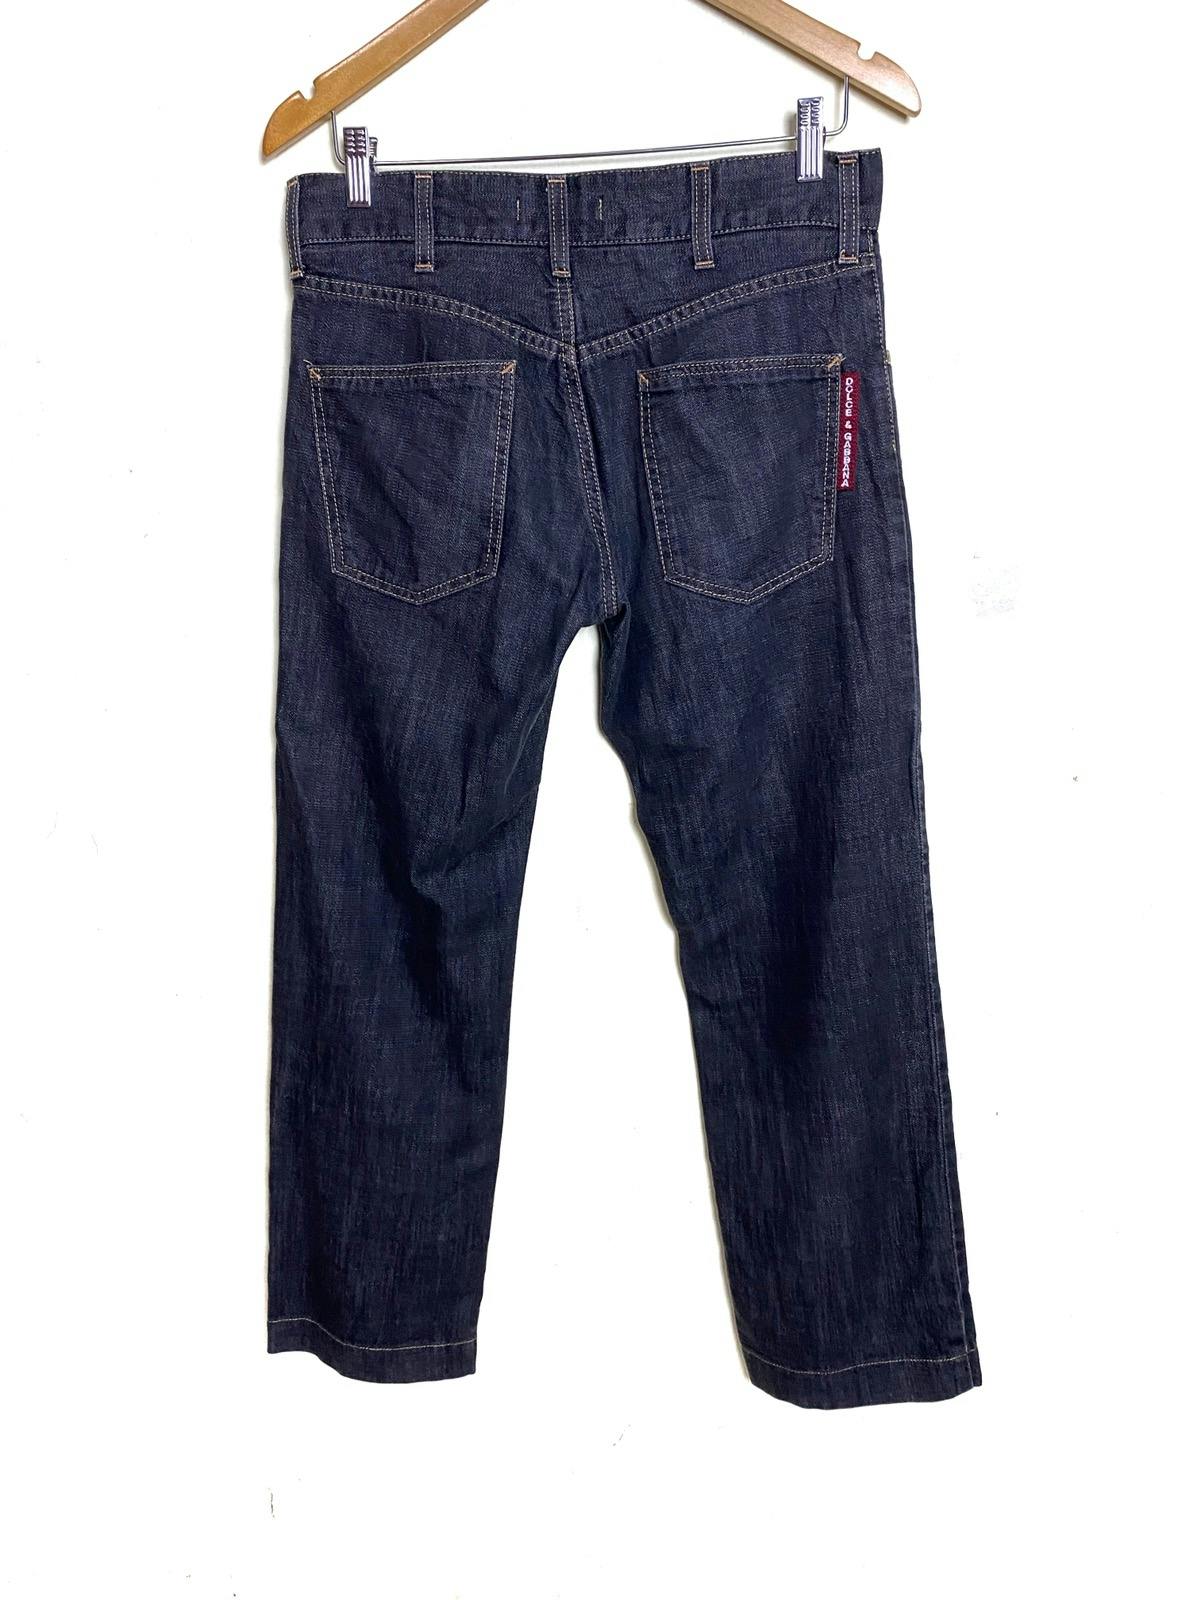 Dolce & Gabbana 14 Classic Denim Jeans - 7